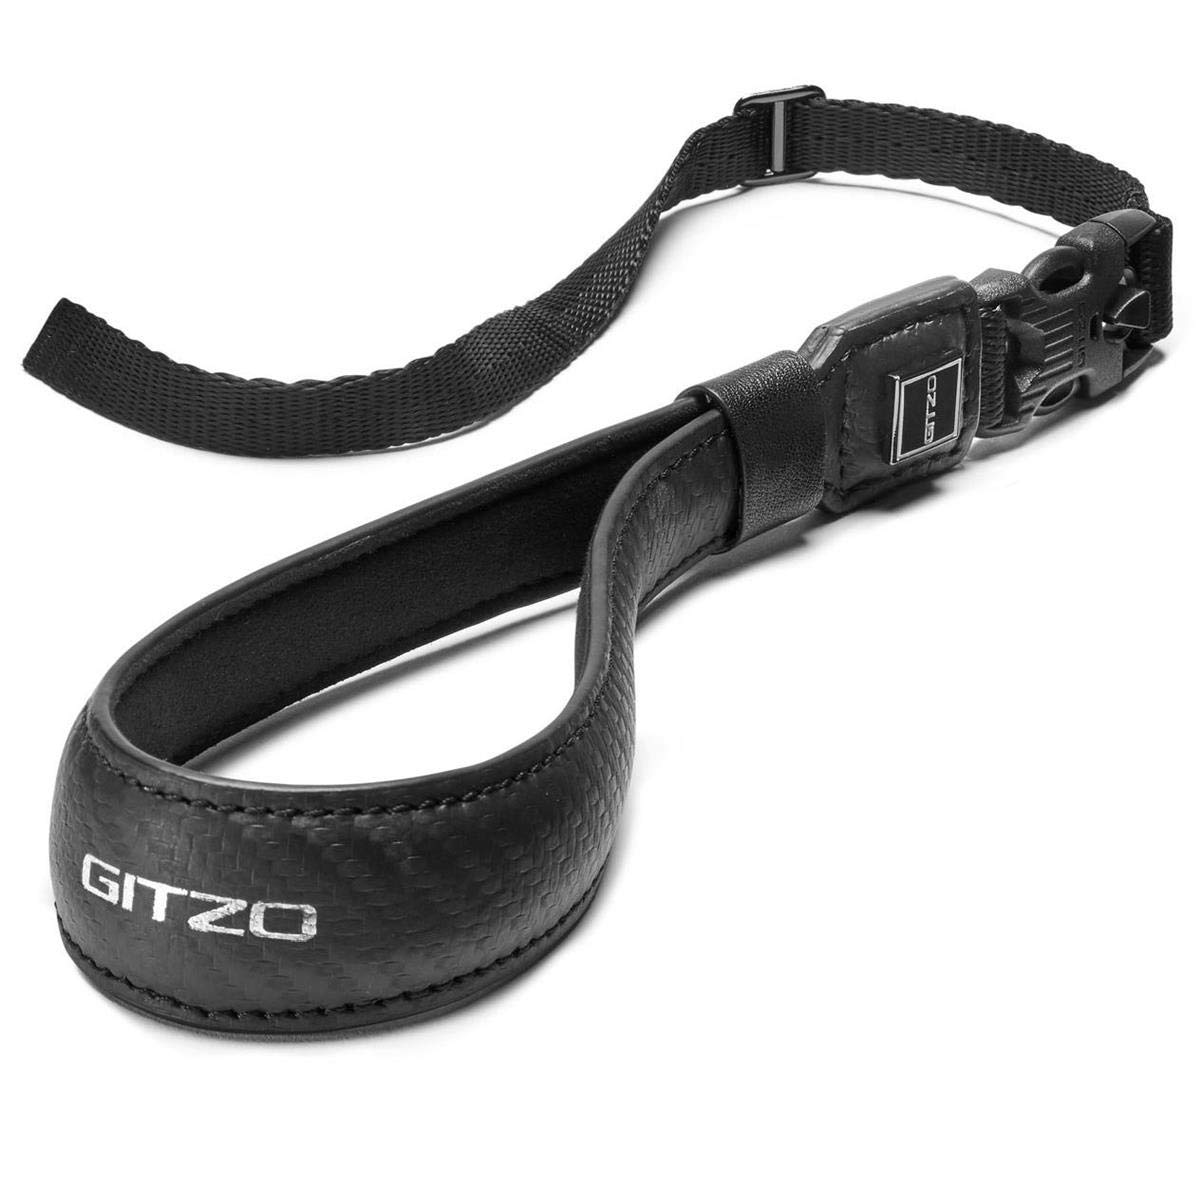 Gitzo Century Armband, Kameragurt, Kamera-Armband, für Spiegellose Kameras, für Fotografen und Videografen, aus Echtem Italienischem Leder